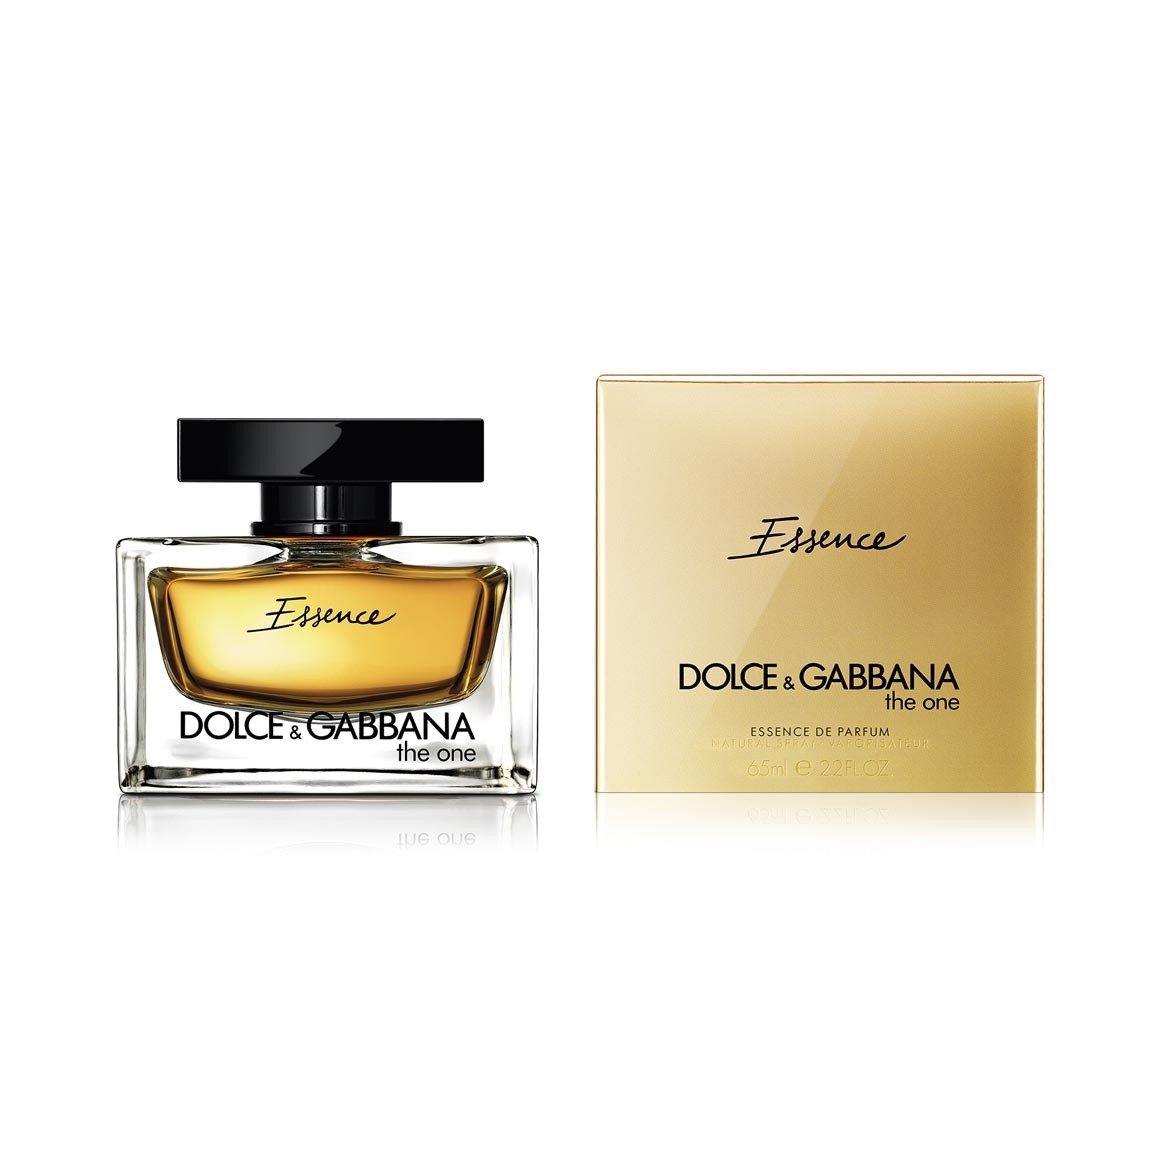 Dolce & Gabbana the one Essence - DrezzCo.